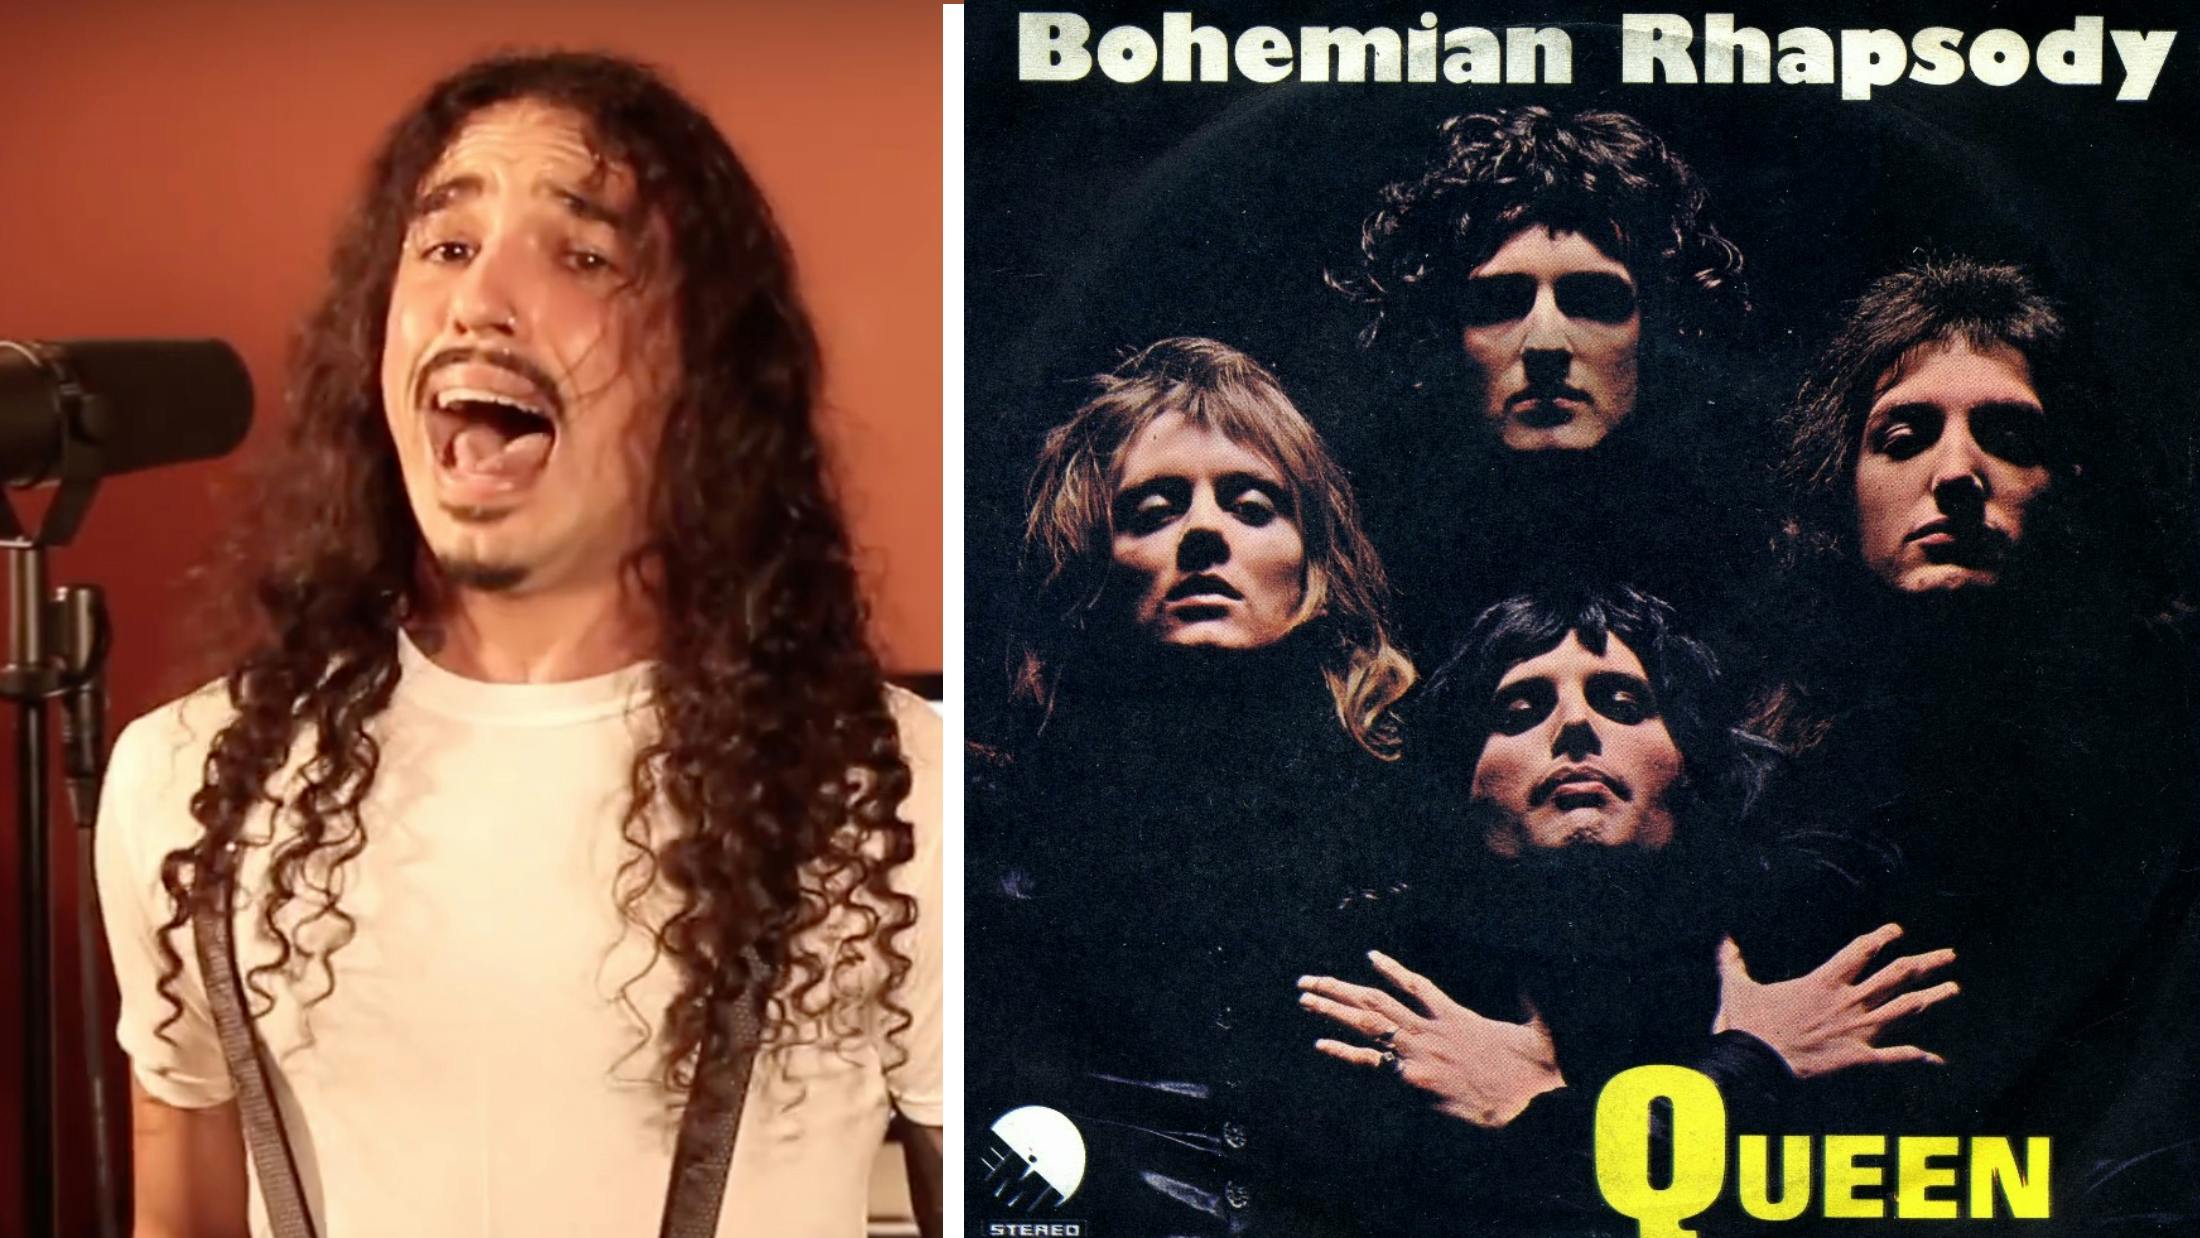 Watch The Ten Second Song Guy Sing Bohemian Rhapsody In 42 Ways